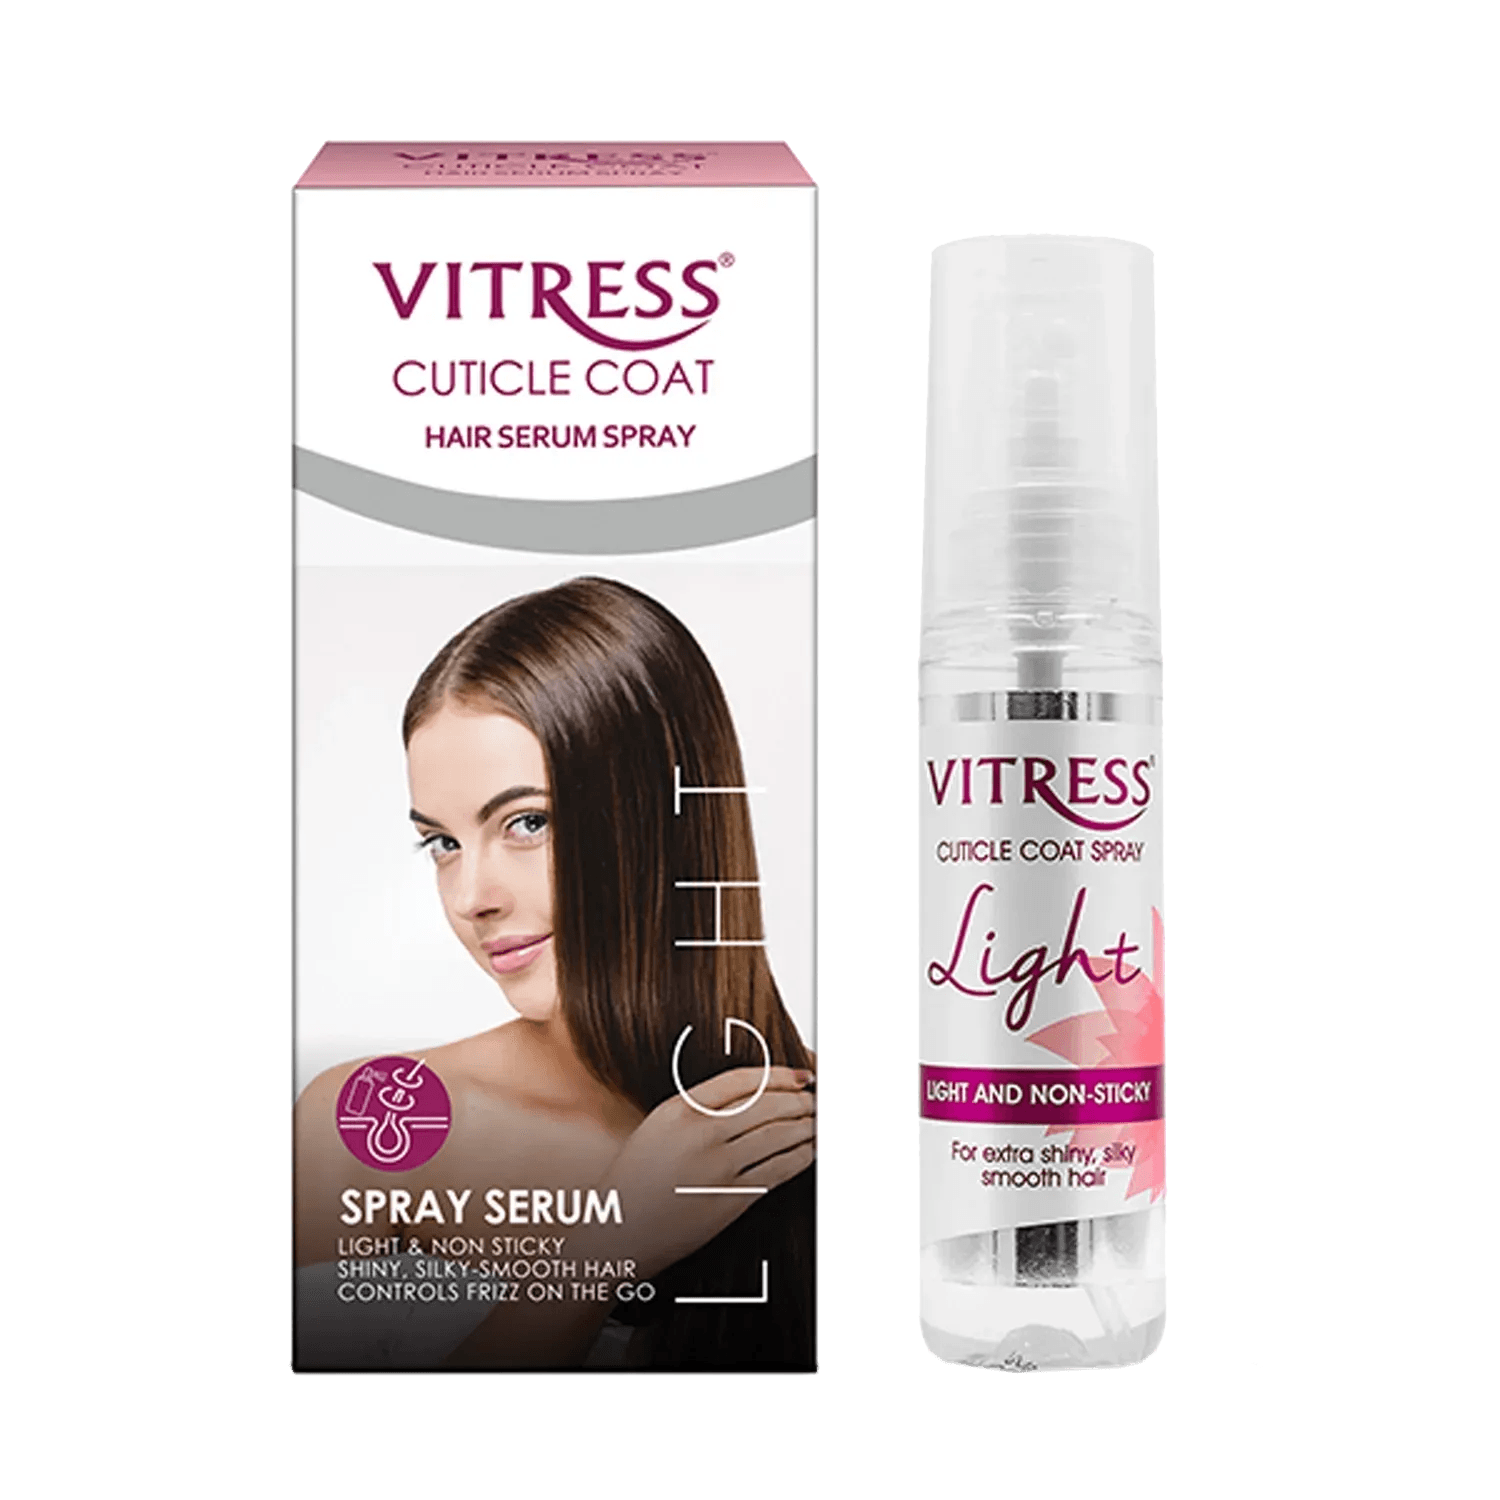 Vitress Cuticle Coat Light Hair Serum Spray (50ml)